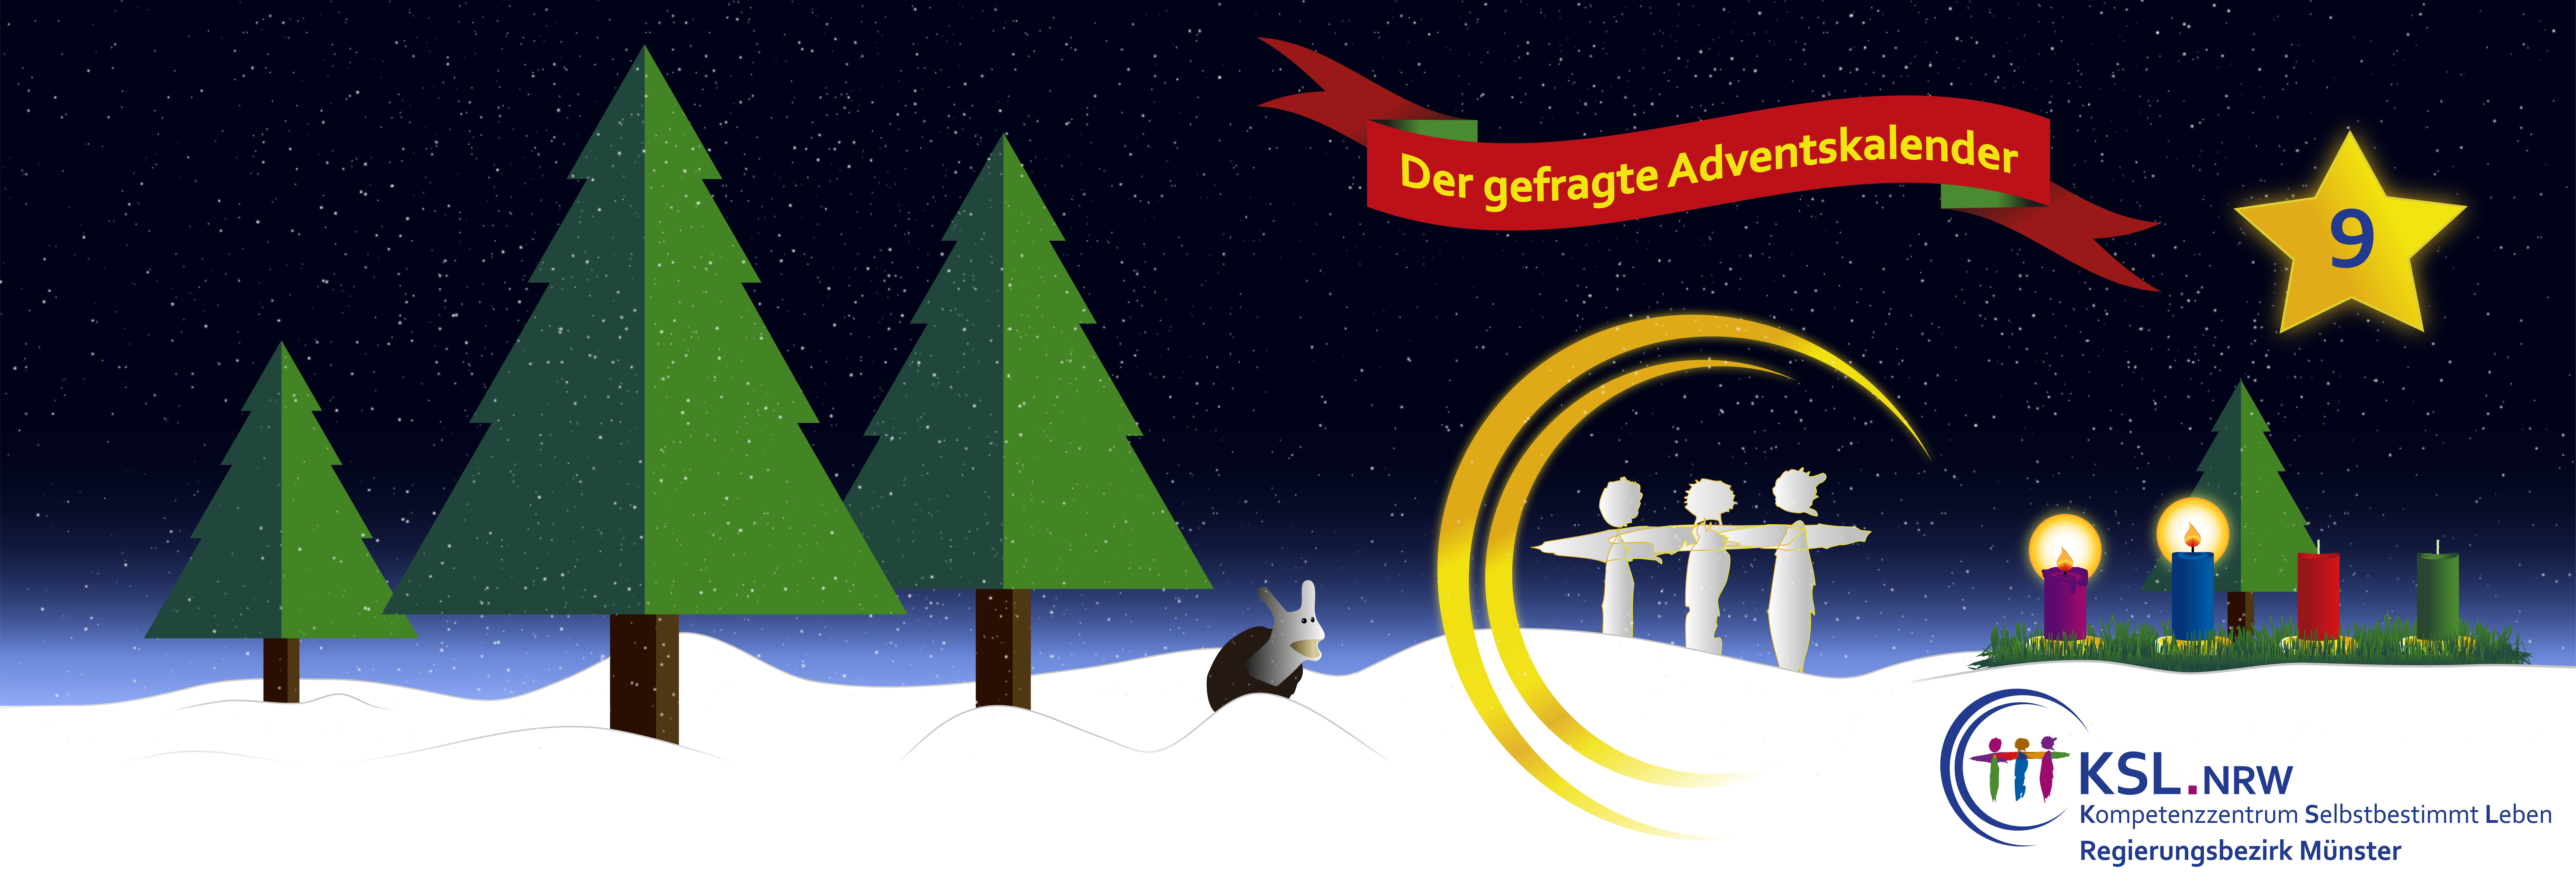 Der gefragte Adventskalender - KSL Münster - weihnachtlicher Hintergrund - vier Tannenbäume-  ein Stern mit der Nummer 9 - eine Schnecke im Schnee - ein Adventskranz mit vier Kerzen